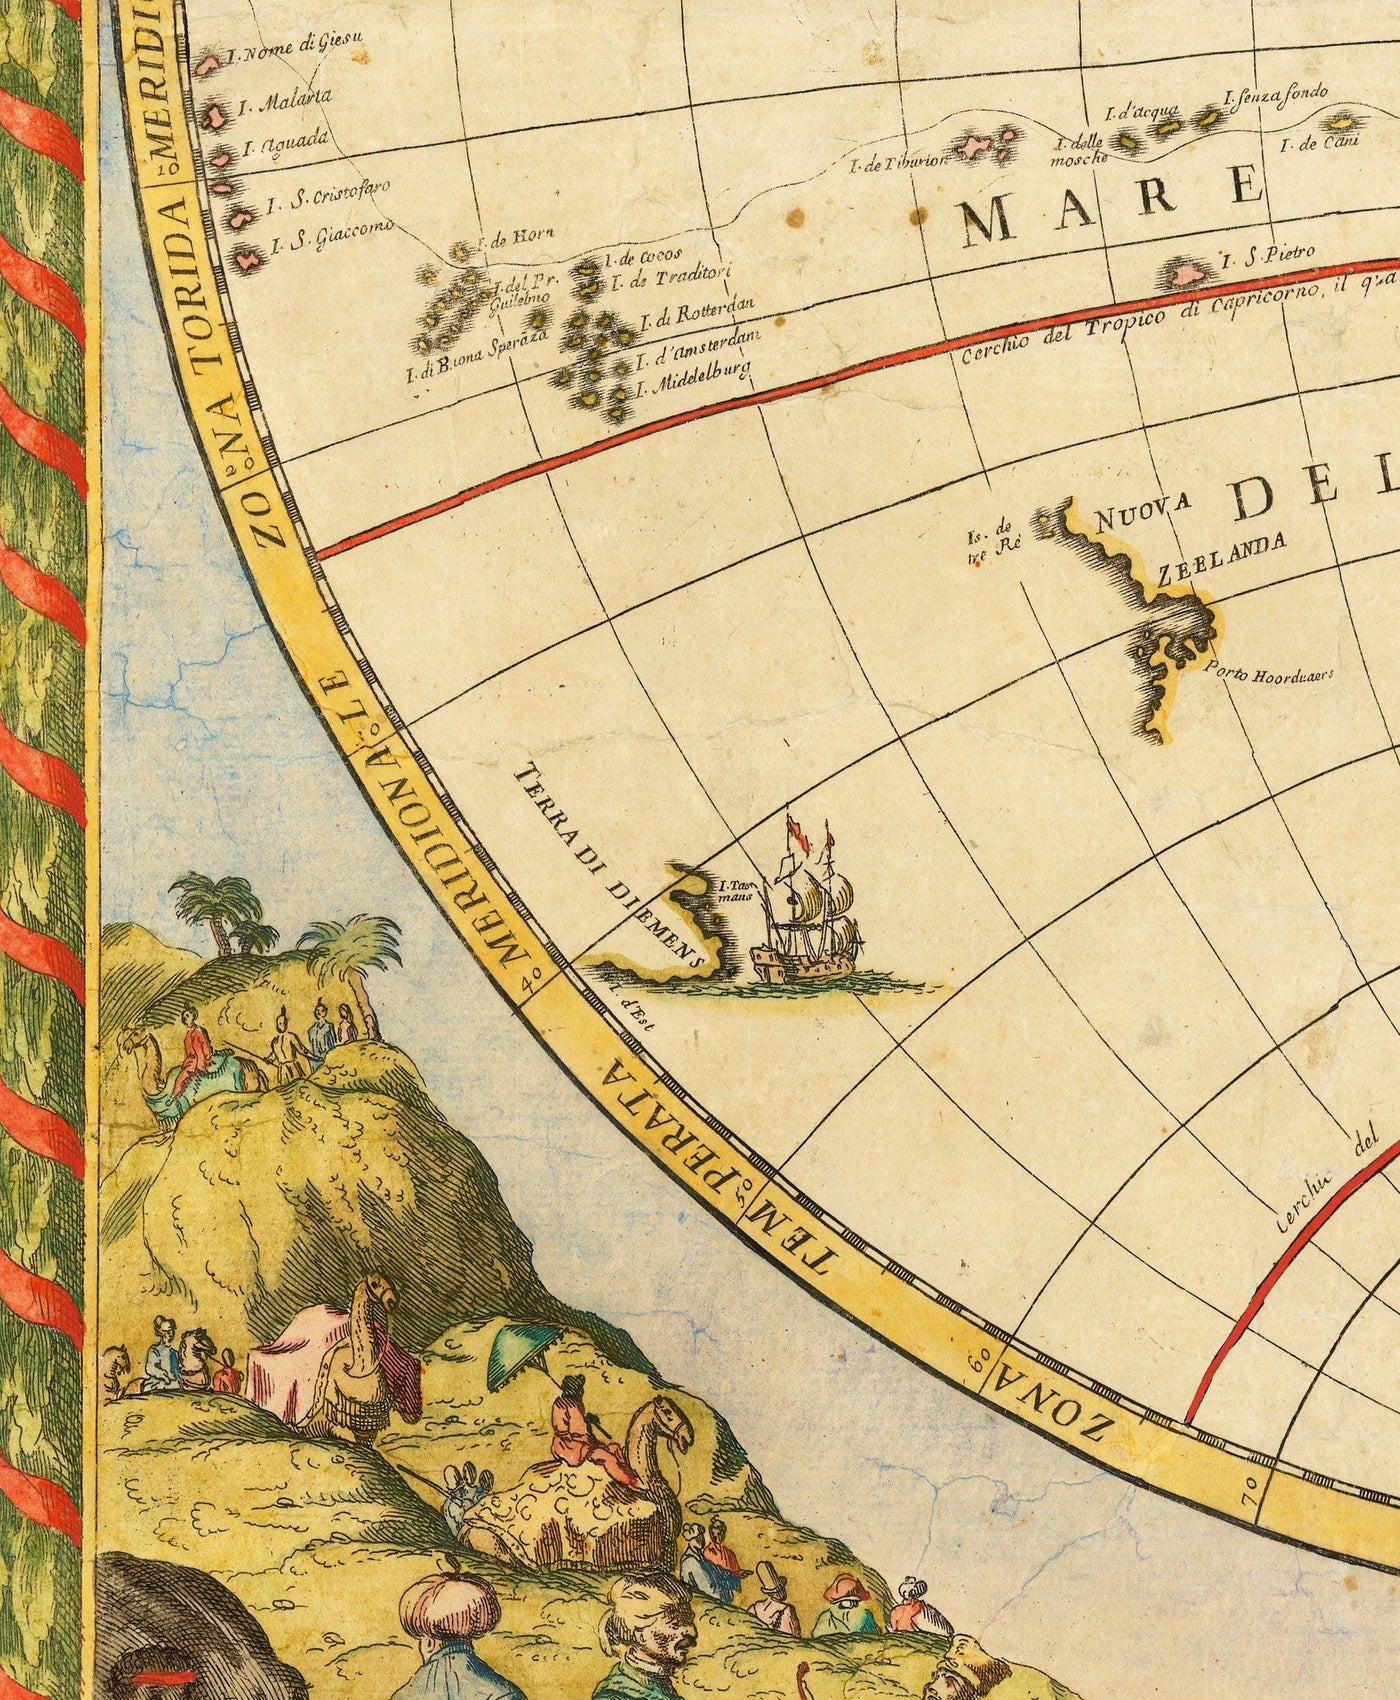 Carte de l'Atlas d'Old World, 1700 par Paolo Petrini - Carte rare Maincolourrée Antique